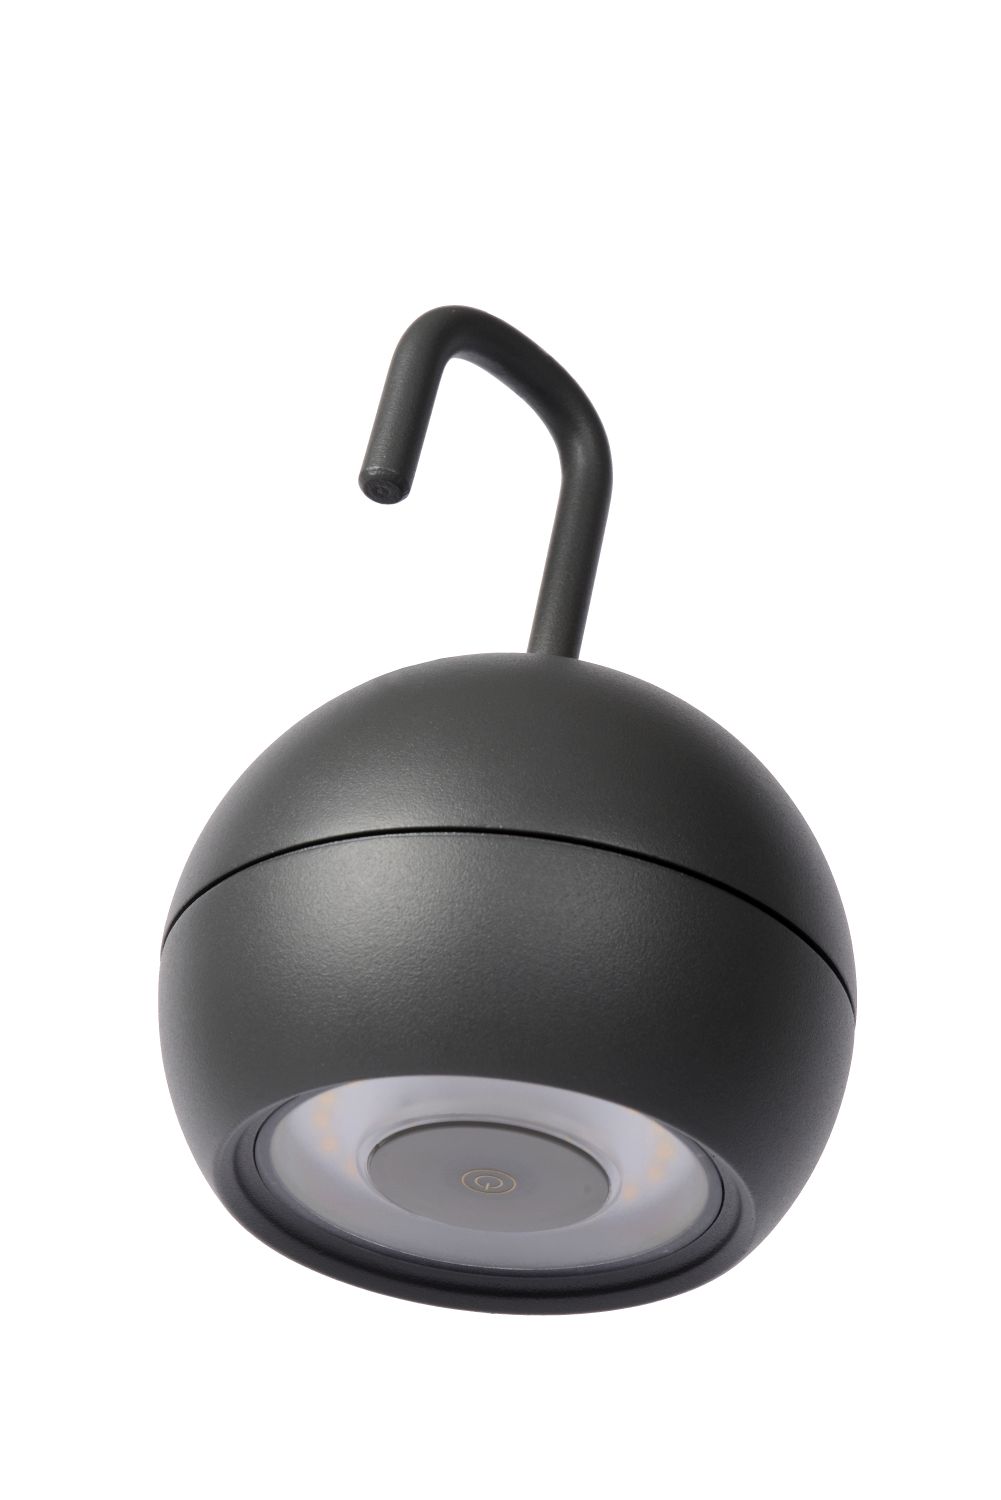 Lucide SPHERE - Oplaadbare Hanglamp Buiten - Accu/Batterij - Ø 10,2 cm - LED Dimb. - 1x2W 2700K - IP54 - 3 StepDim - Antraciet